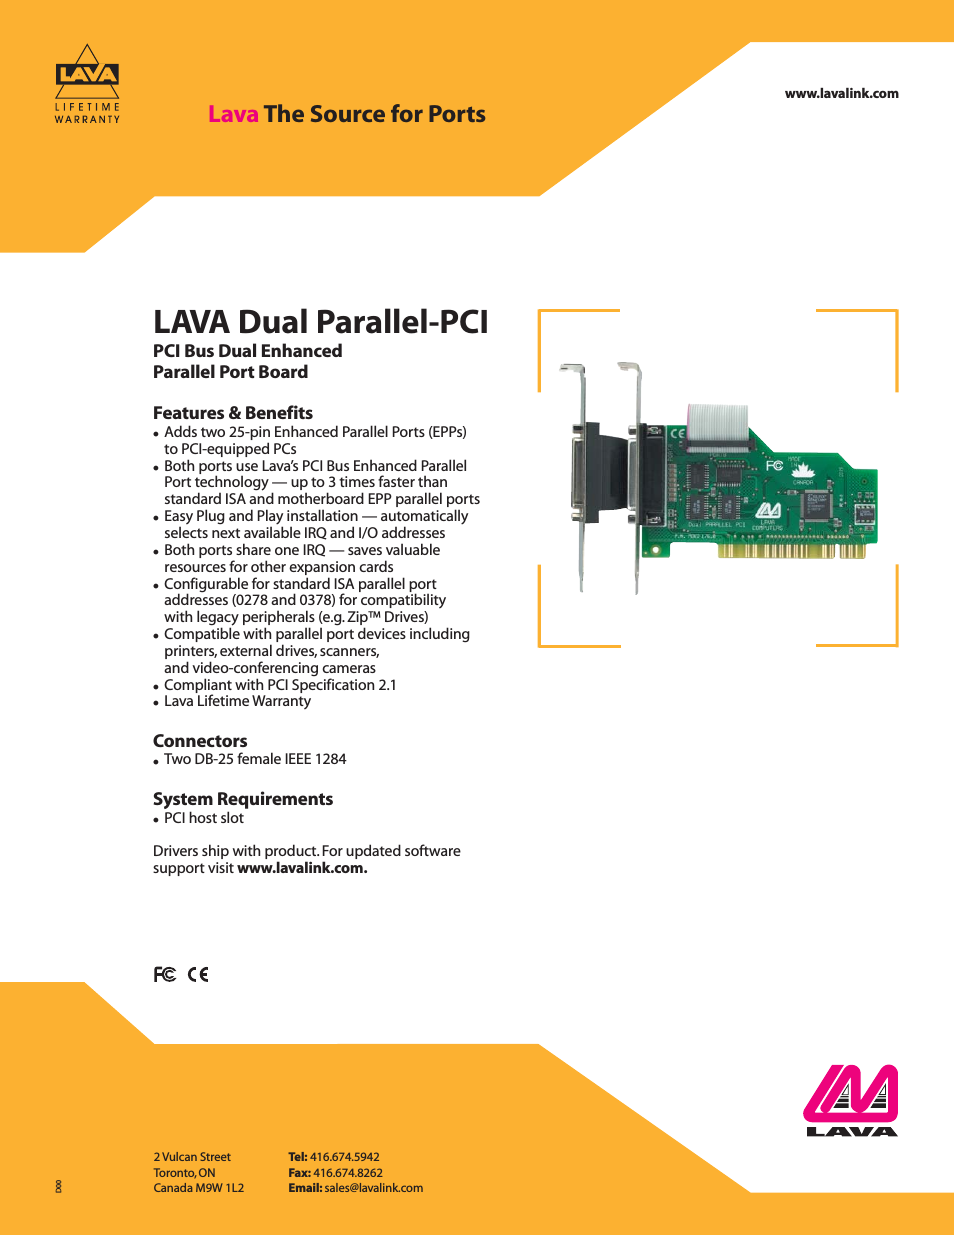 LAVA Dual Parallel-PCI